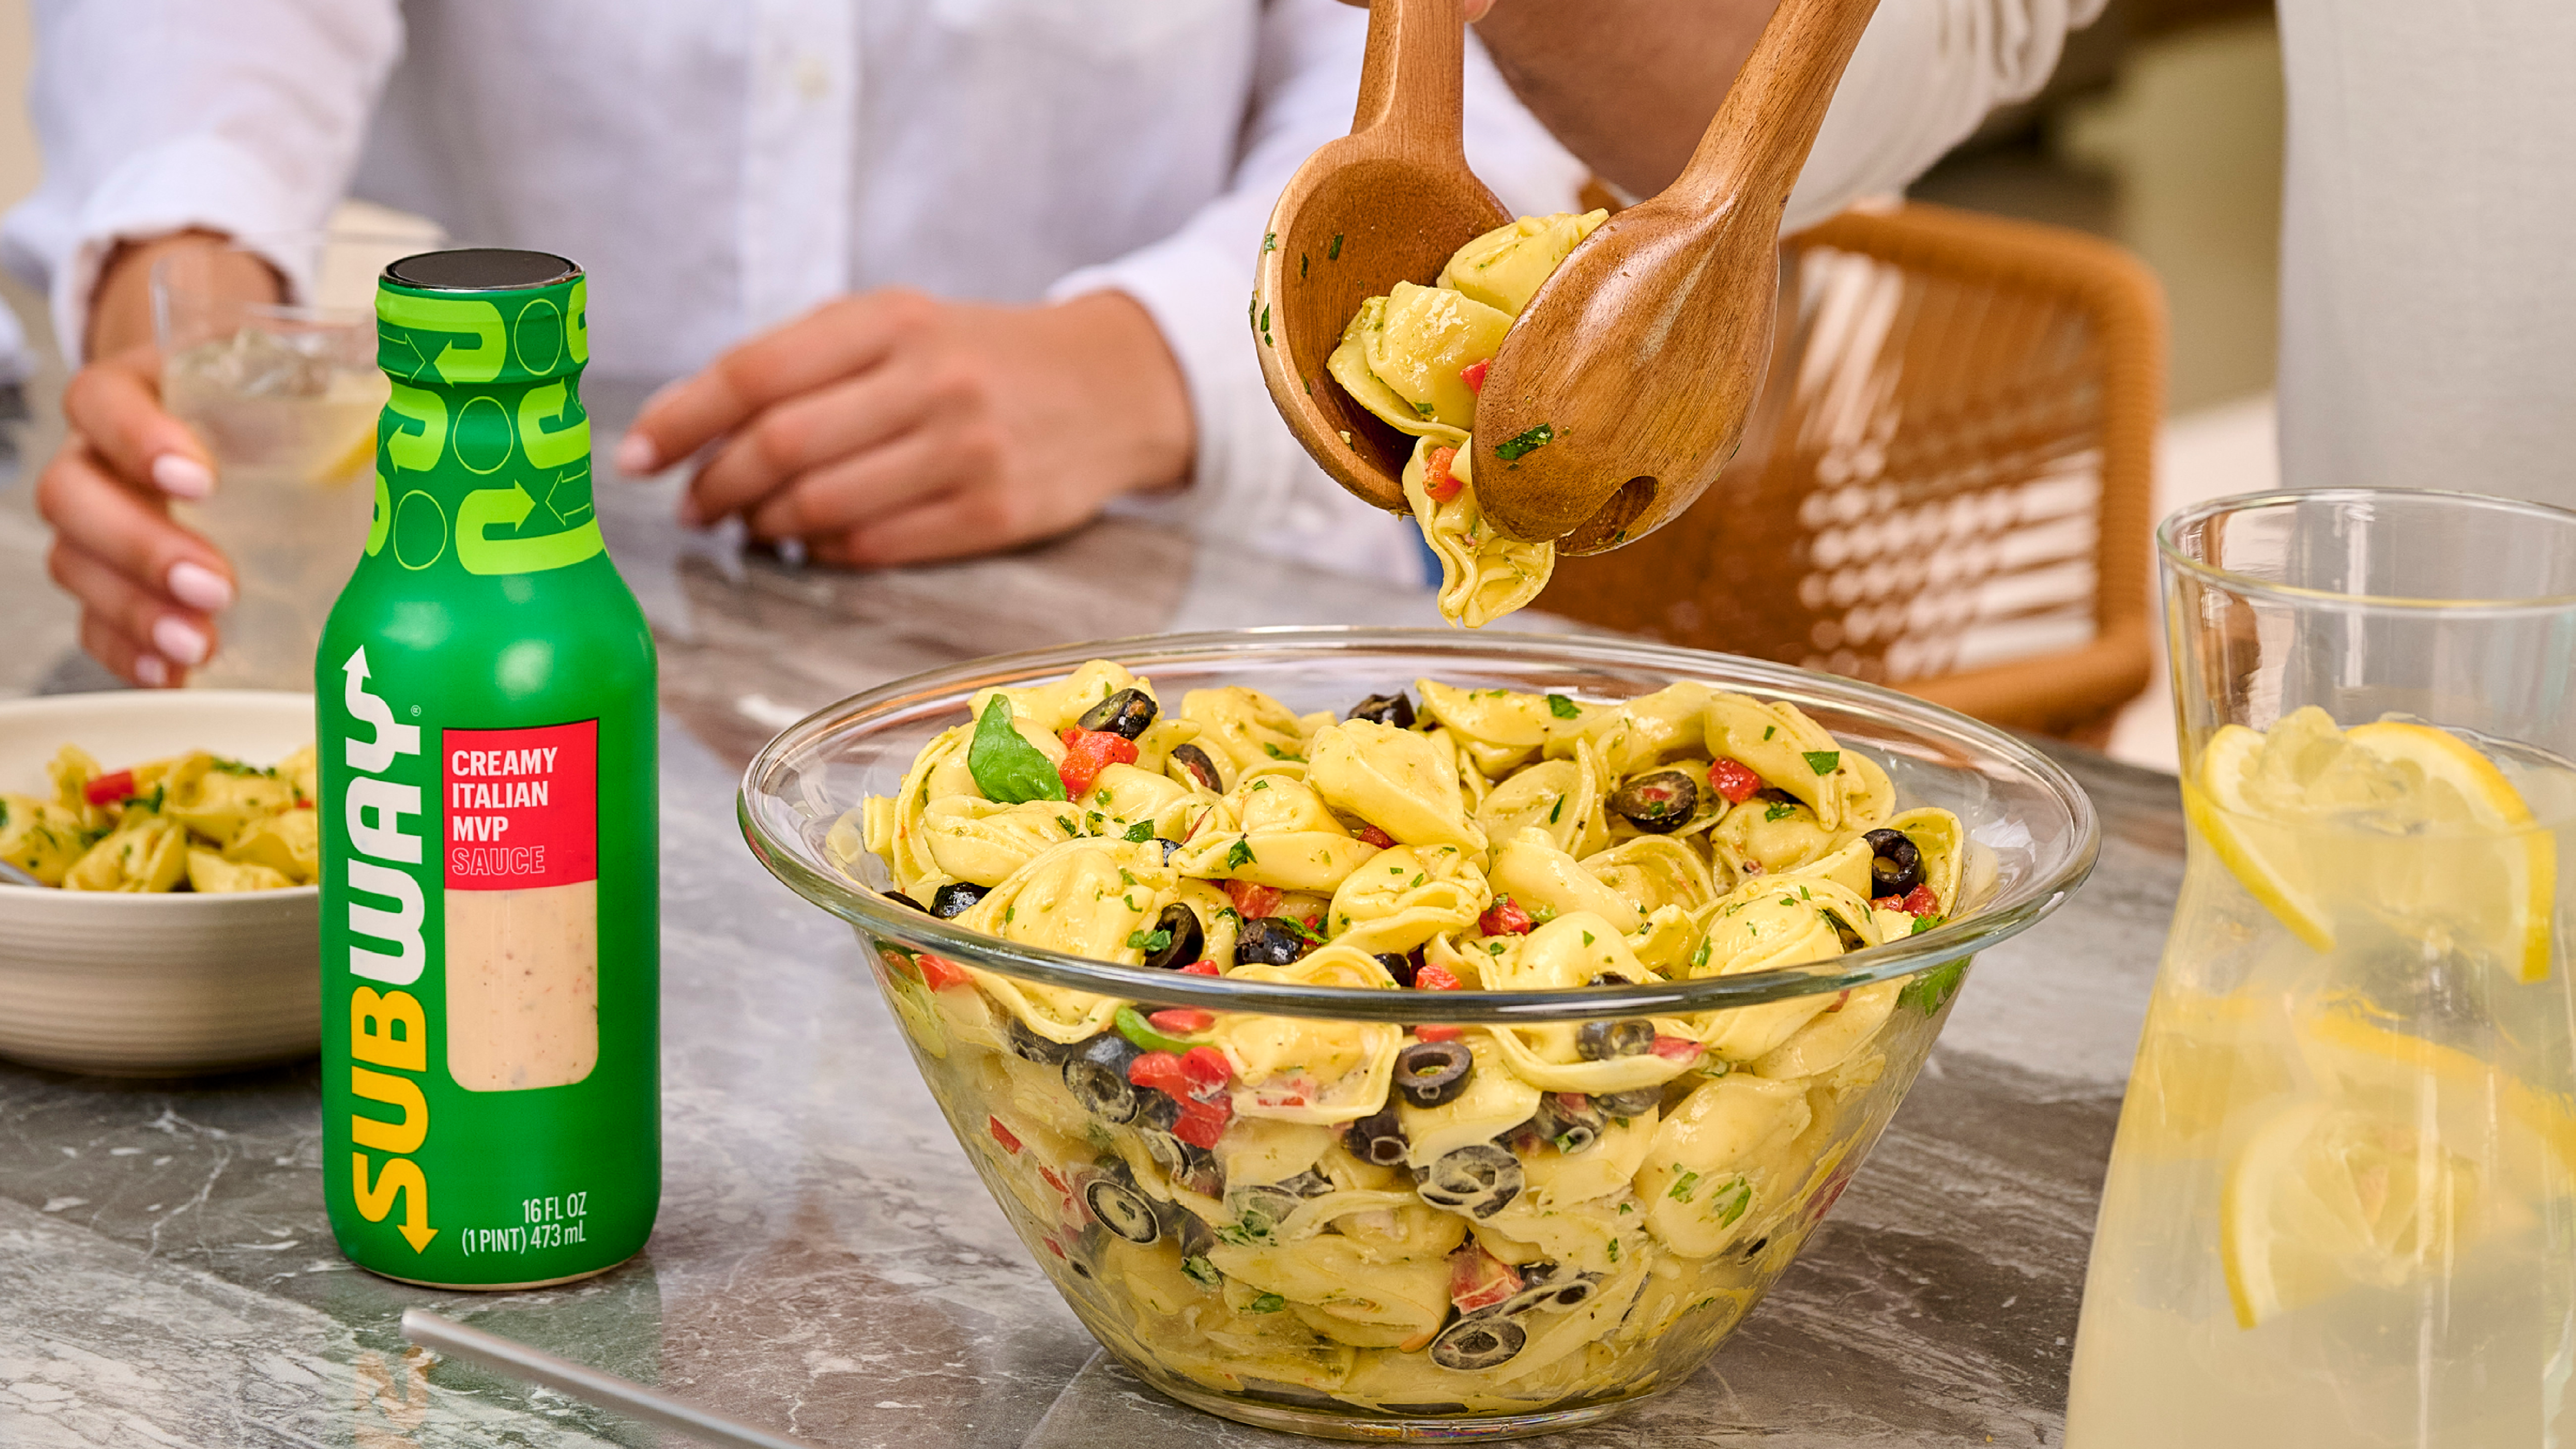 Subway Creamy Italian MVP sauce bottle with tortellini salad